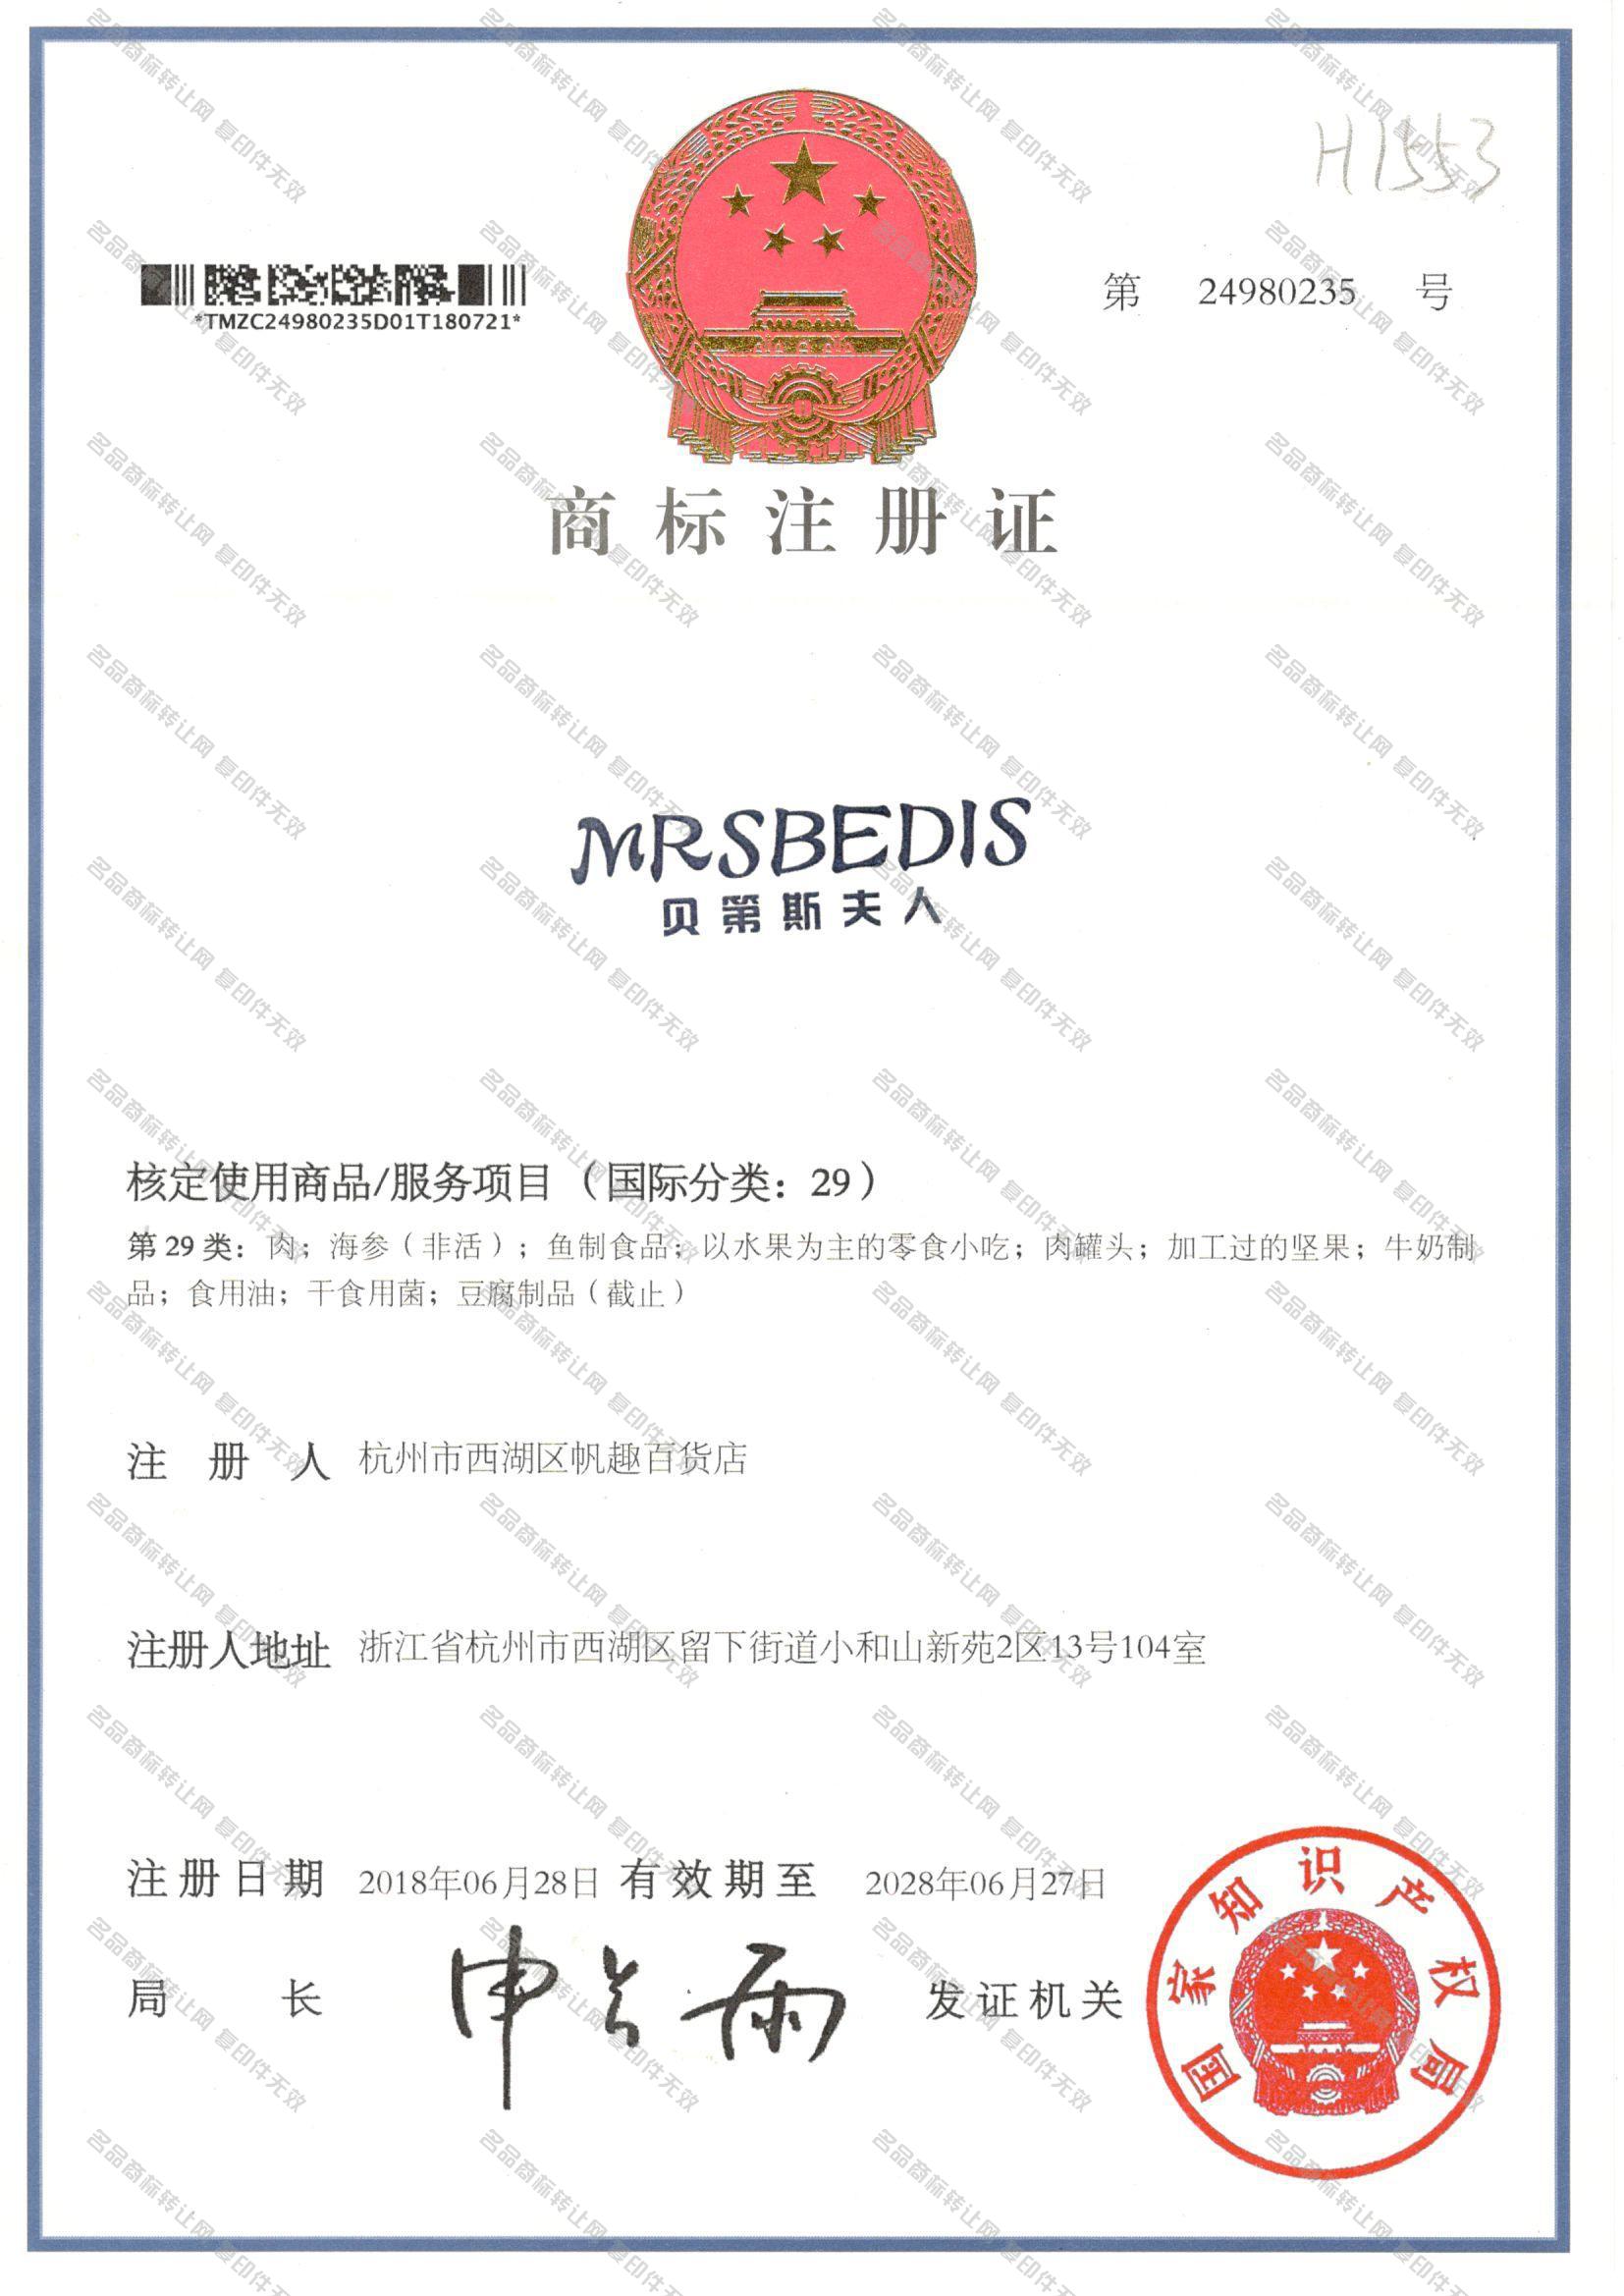 贝第斯夫人 MRSBEDIS注册证